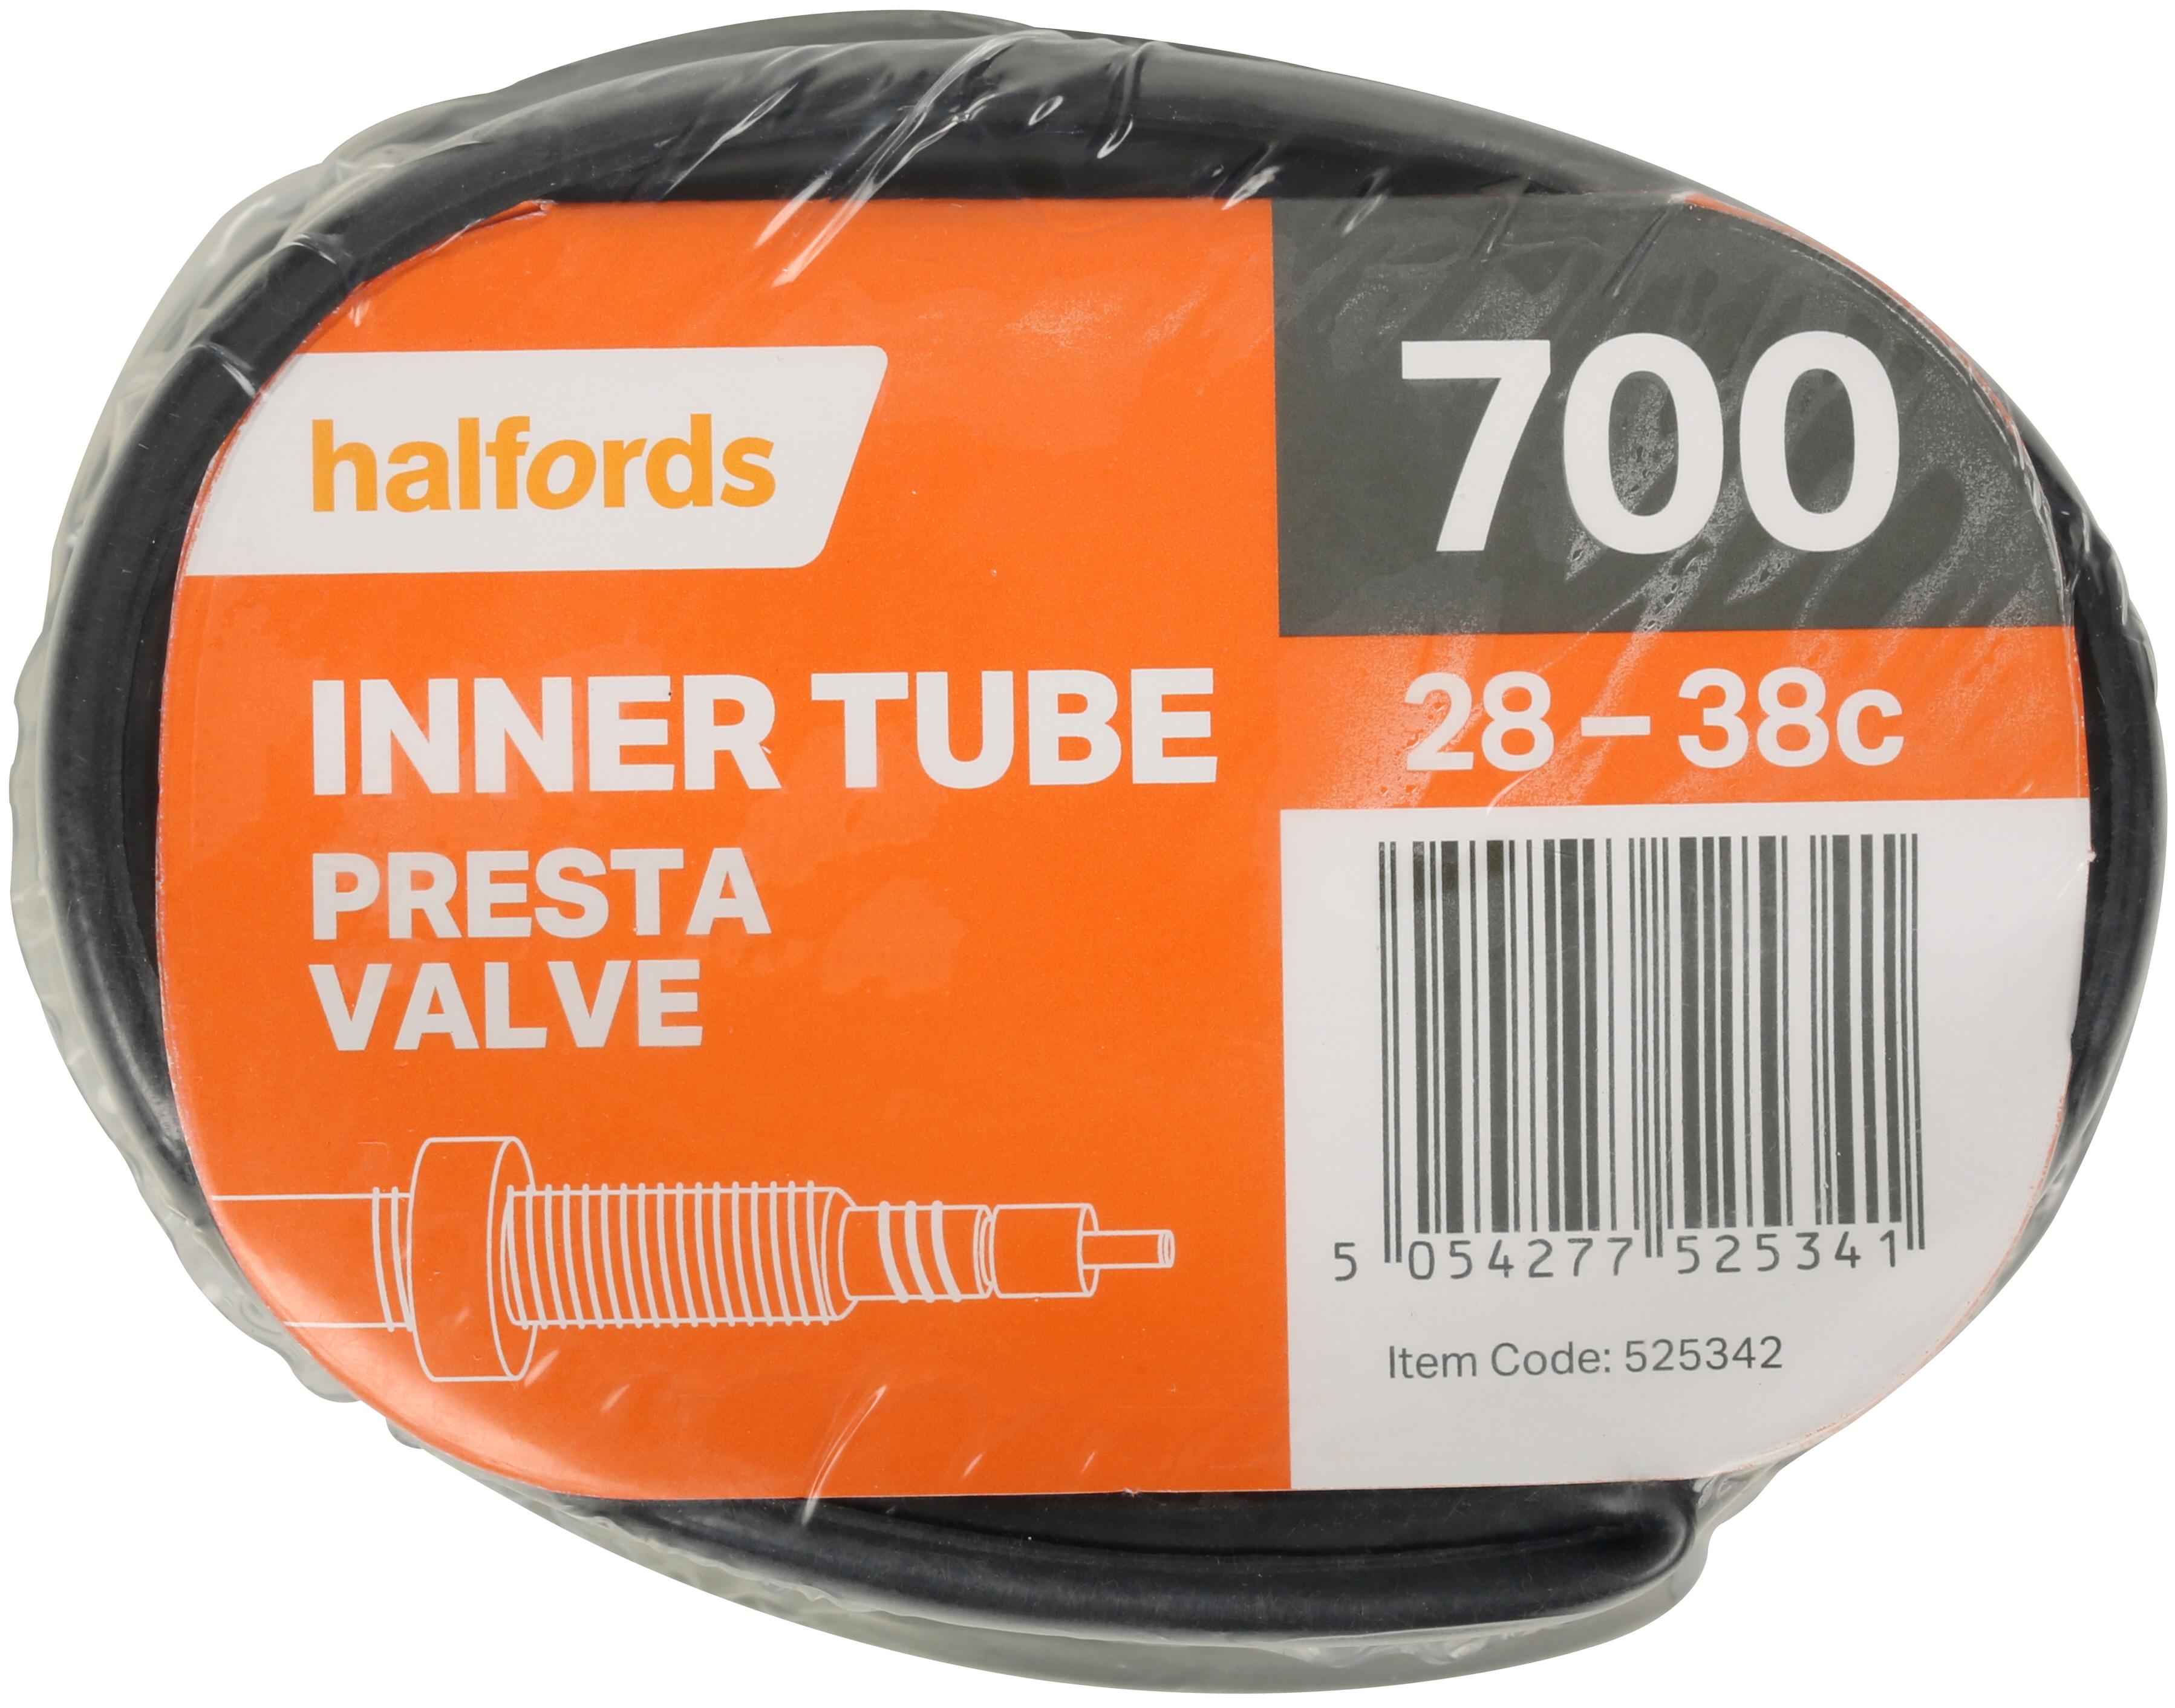 700c bike inner tube